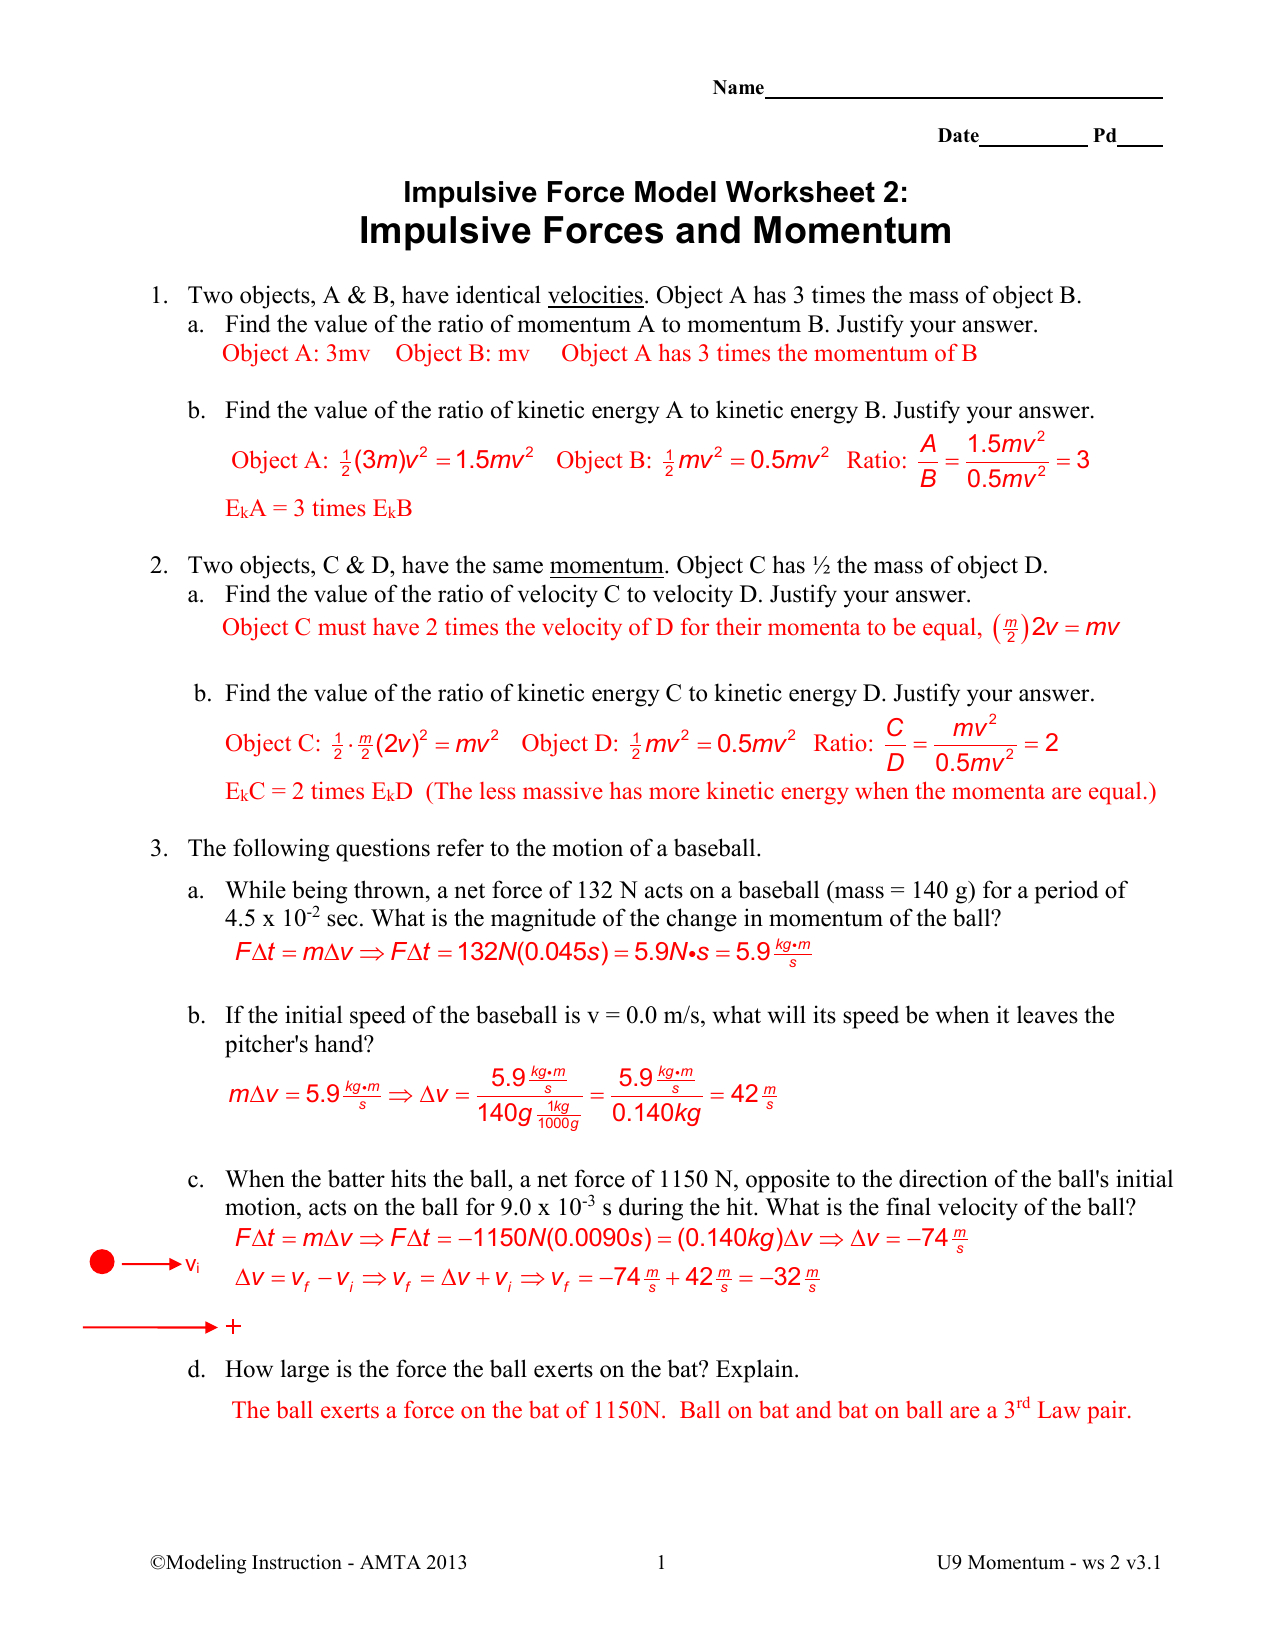 impulsive force model momentum test